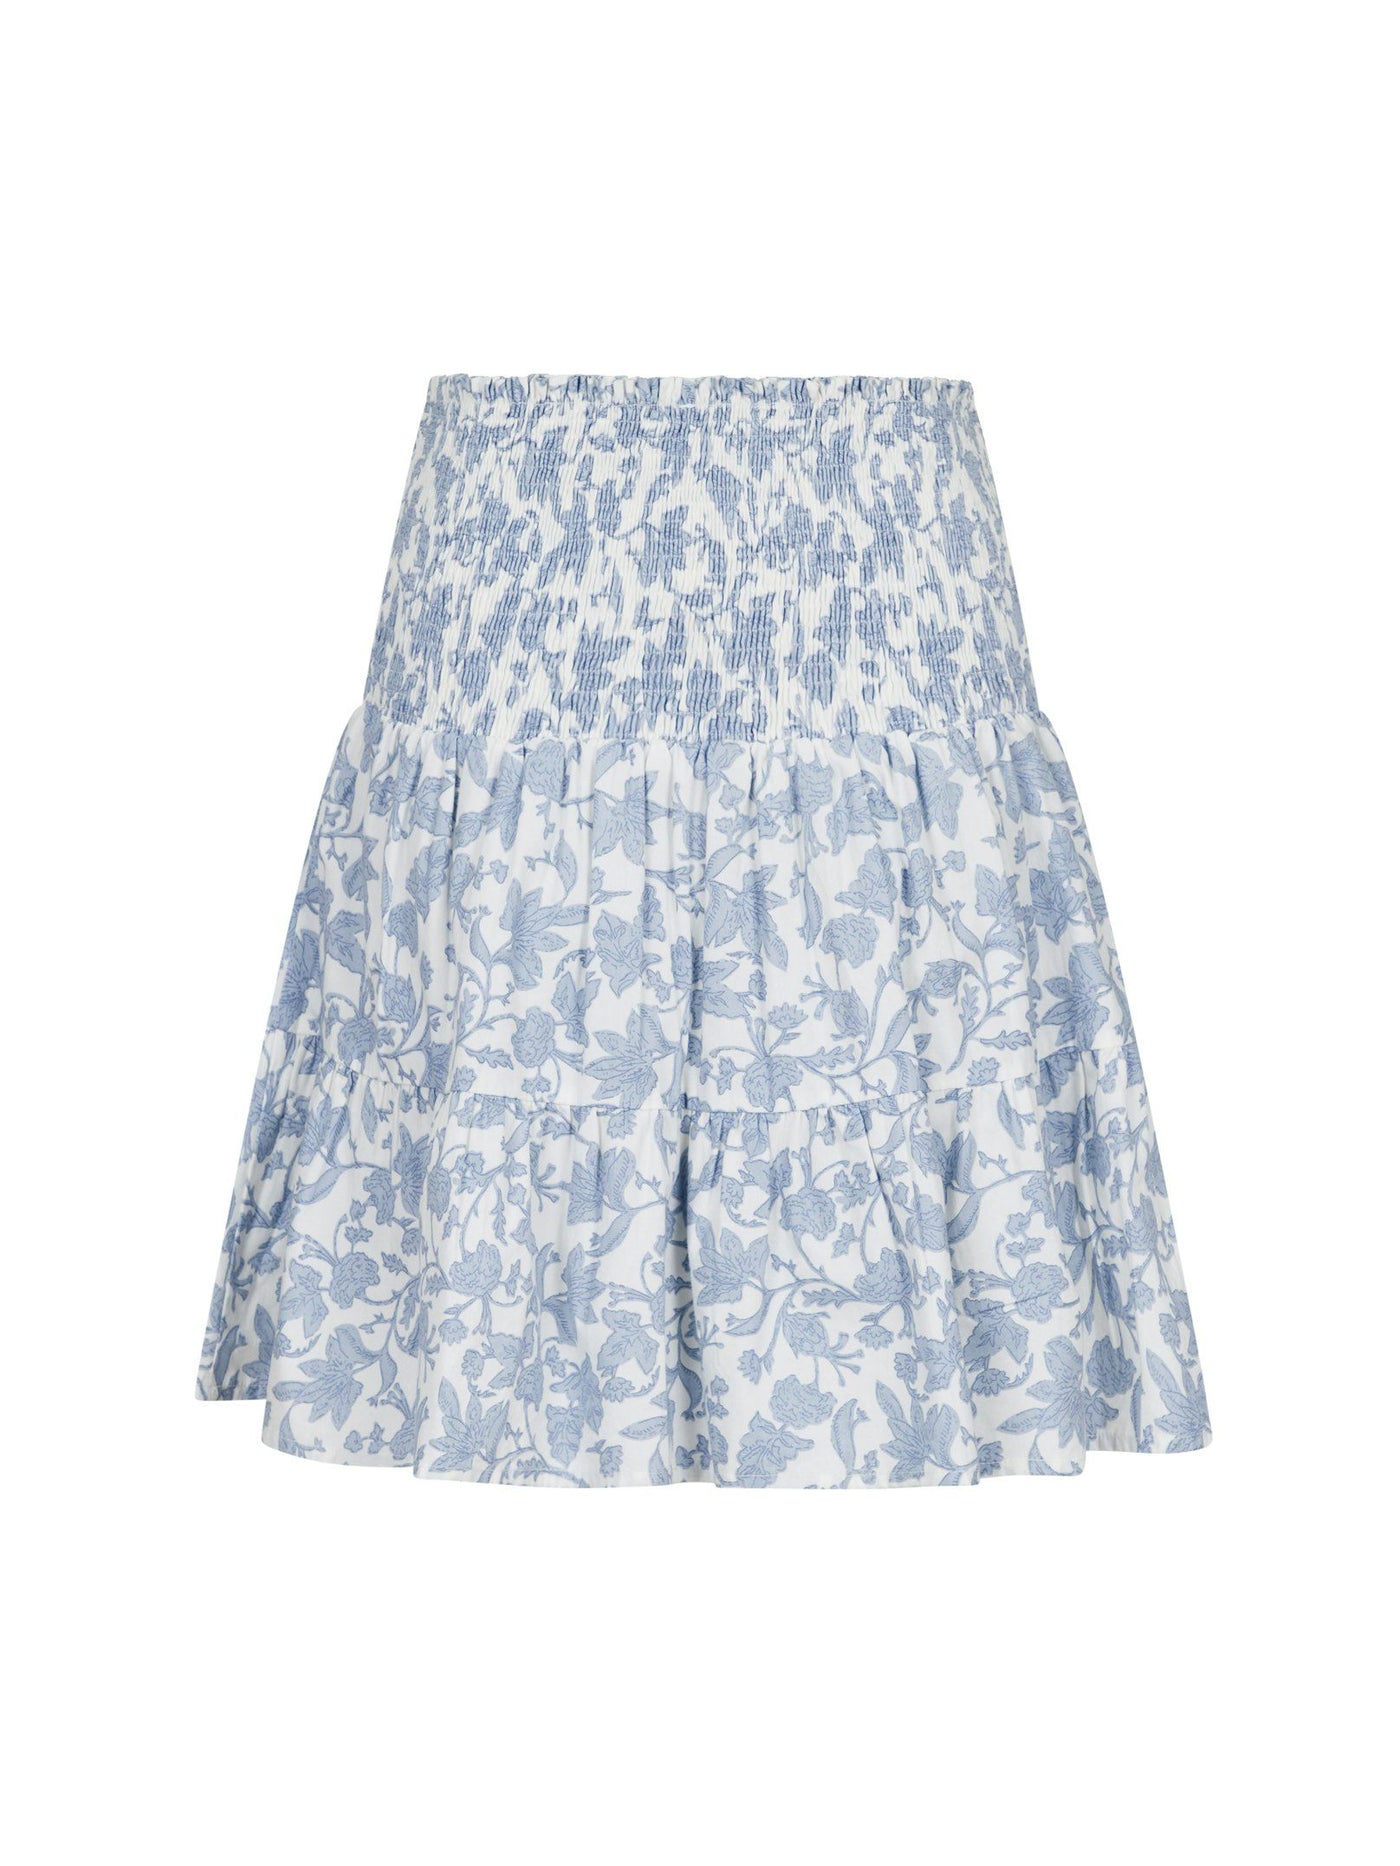 Skirt cordova garden elegance 162451 Light blue